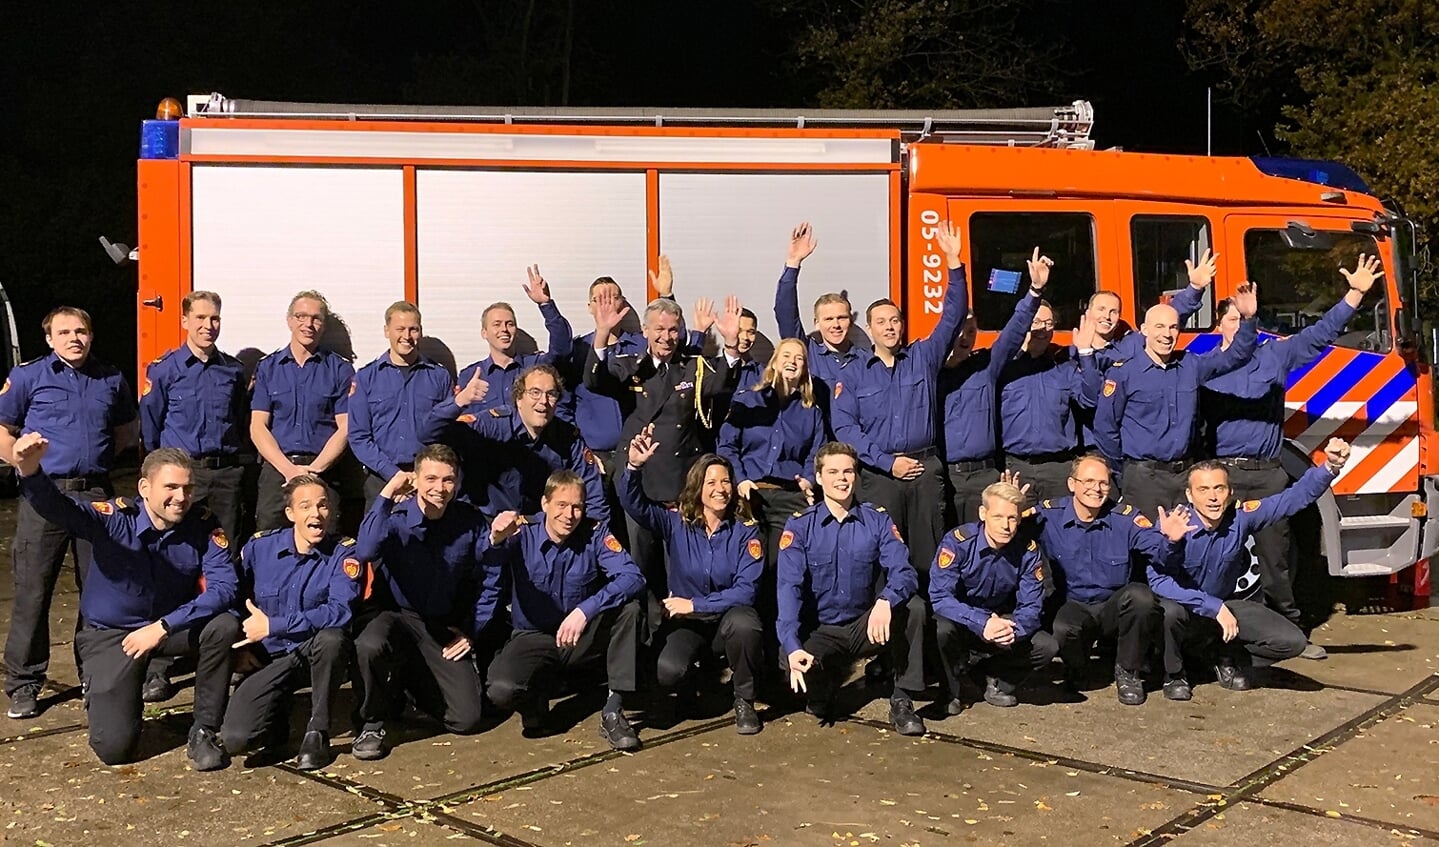 Brandweer Twente heeft er 25 vrijwilligers bij. In februari volgt een nieuwe wervingsronde. 'Het is echt een opleiding, geen cursus', aldus Wendy Franke.